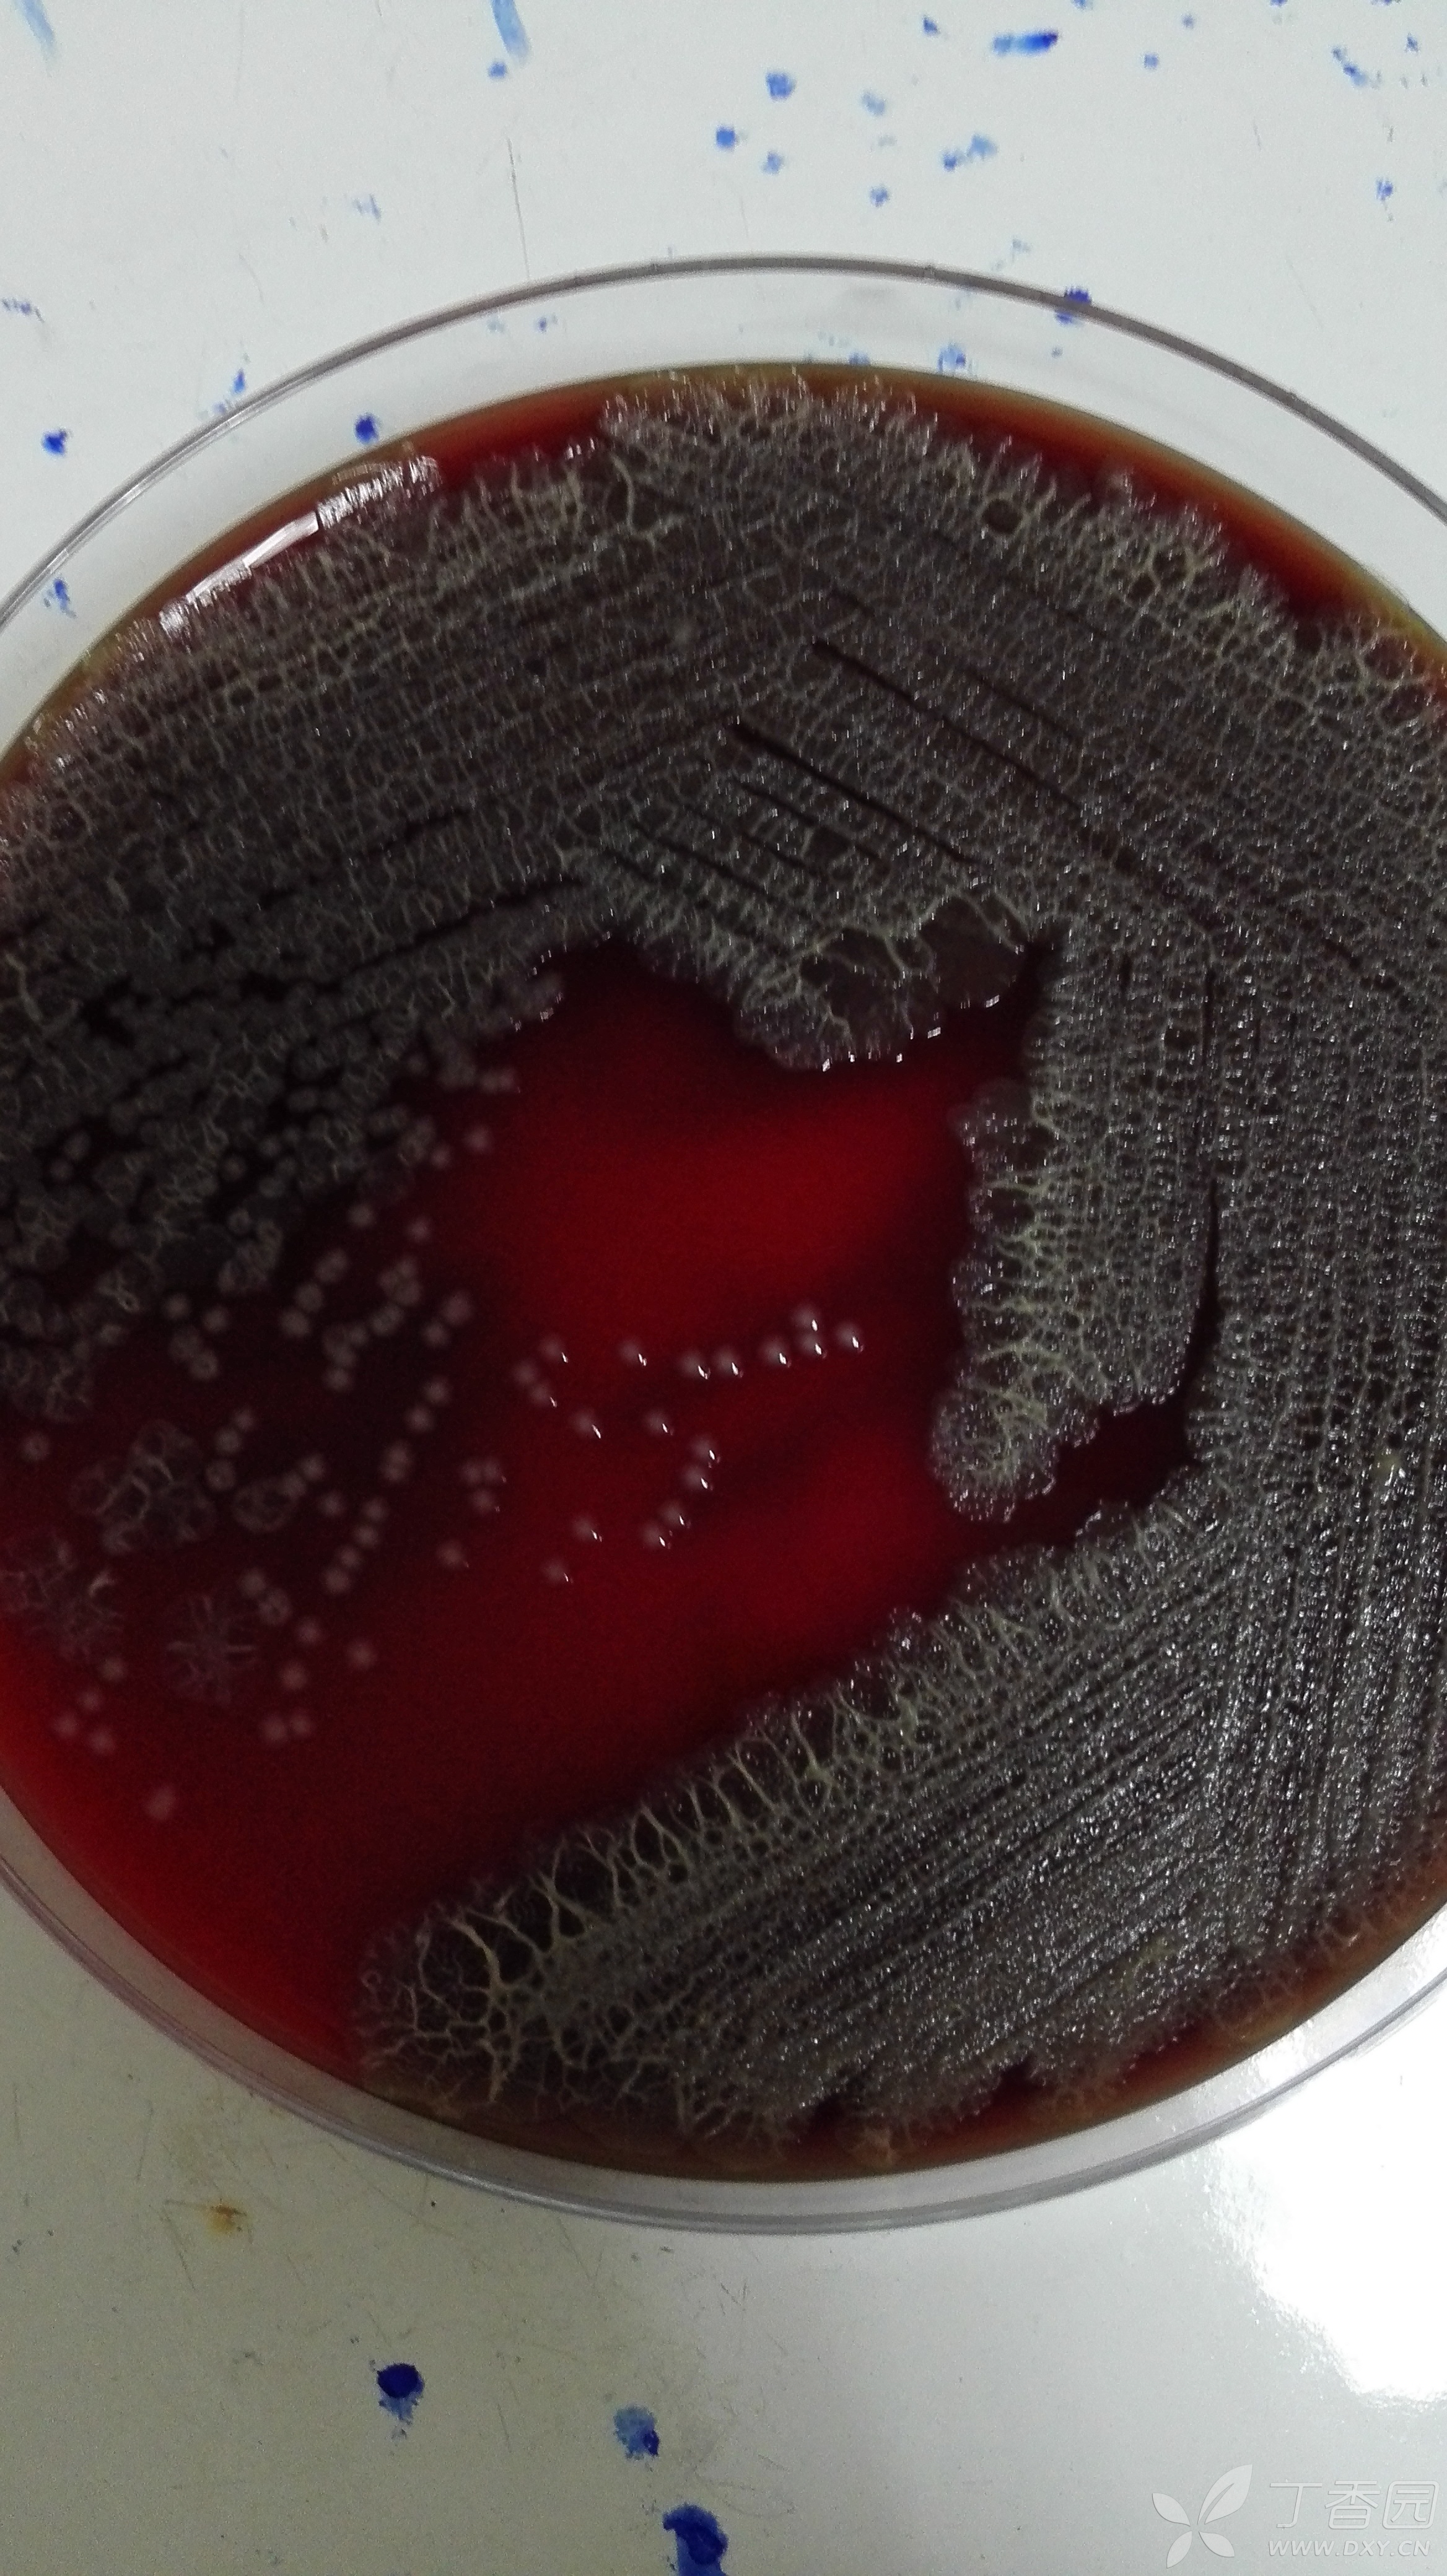 请微生物的老师帮忙看看,为什么这个大肠埃希菌的菌落是这样的